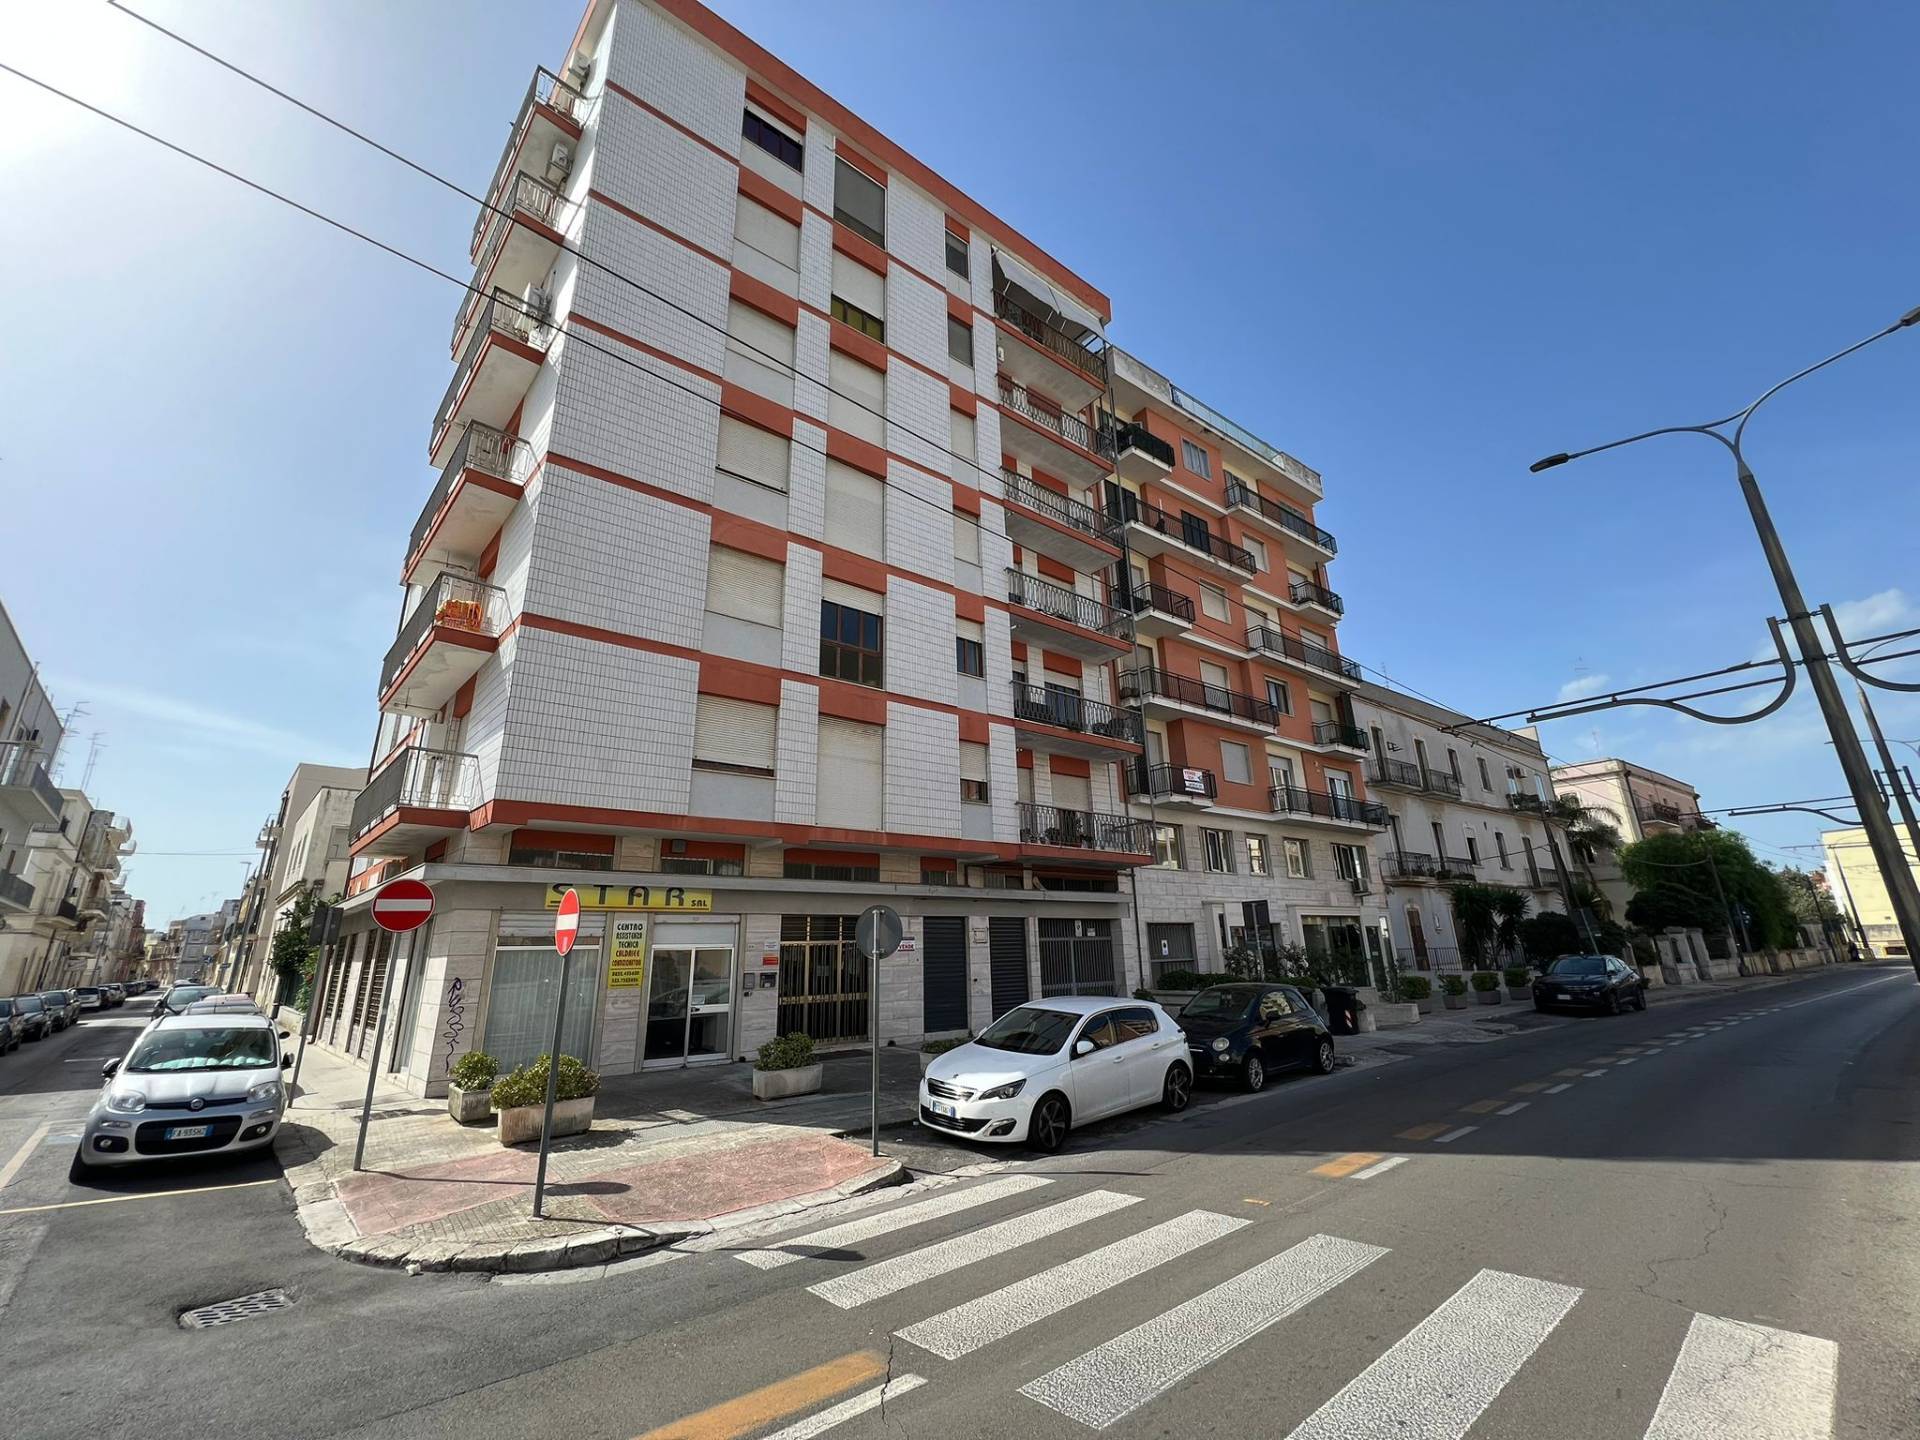 Appartamento in vendita a Lecce, 4 locali, prezzo € 225.000 | PortaleAgenzieImmobiliari.it